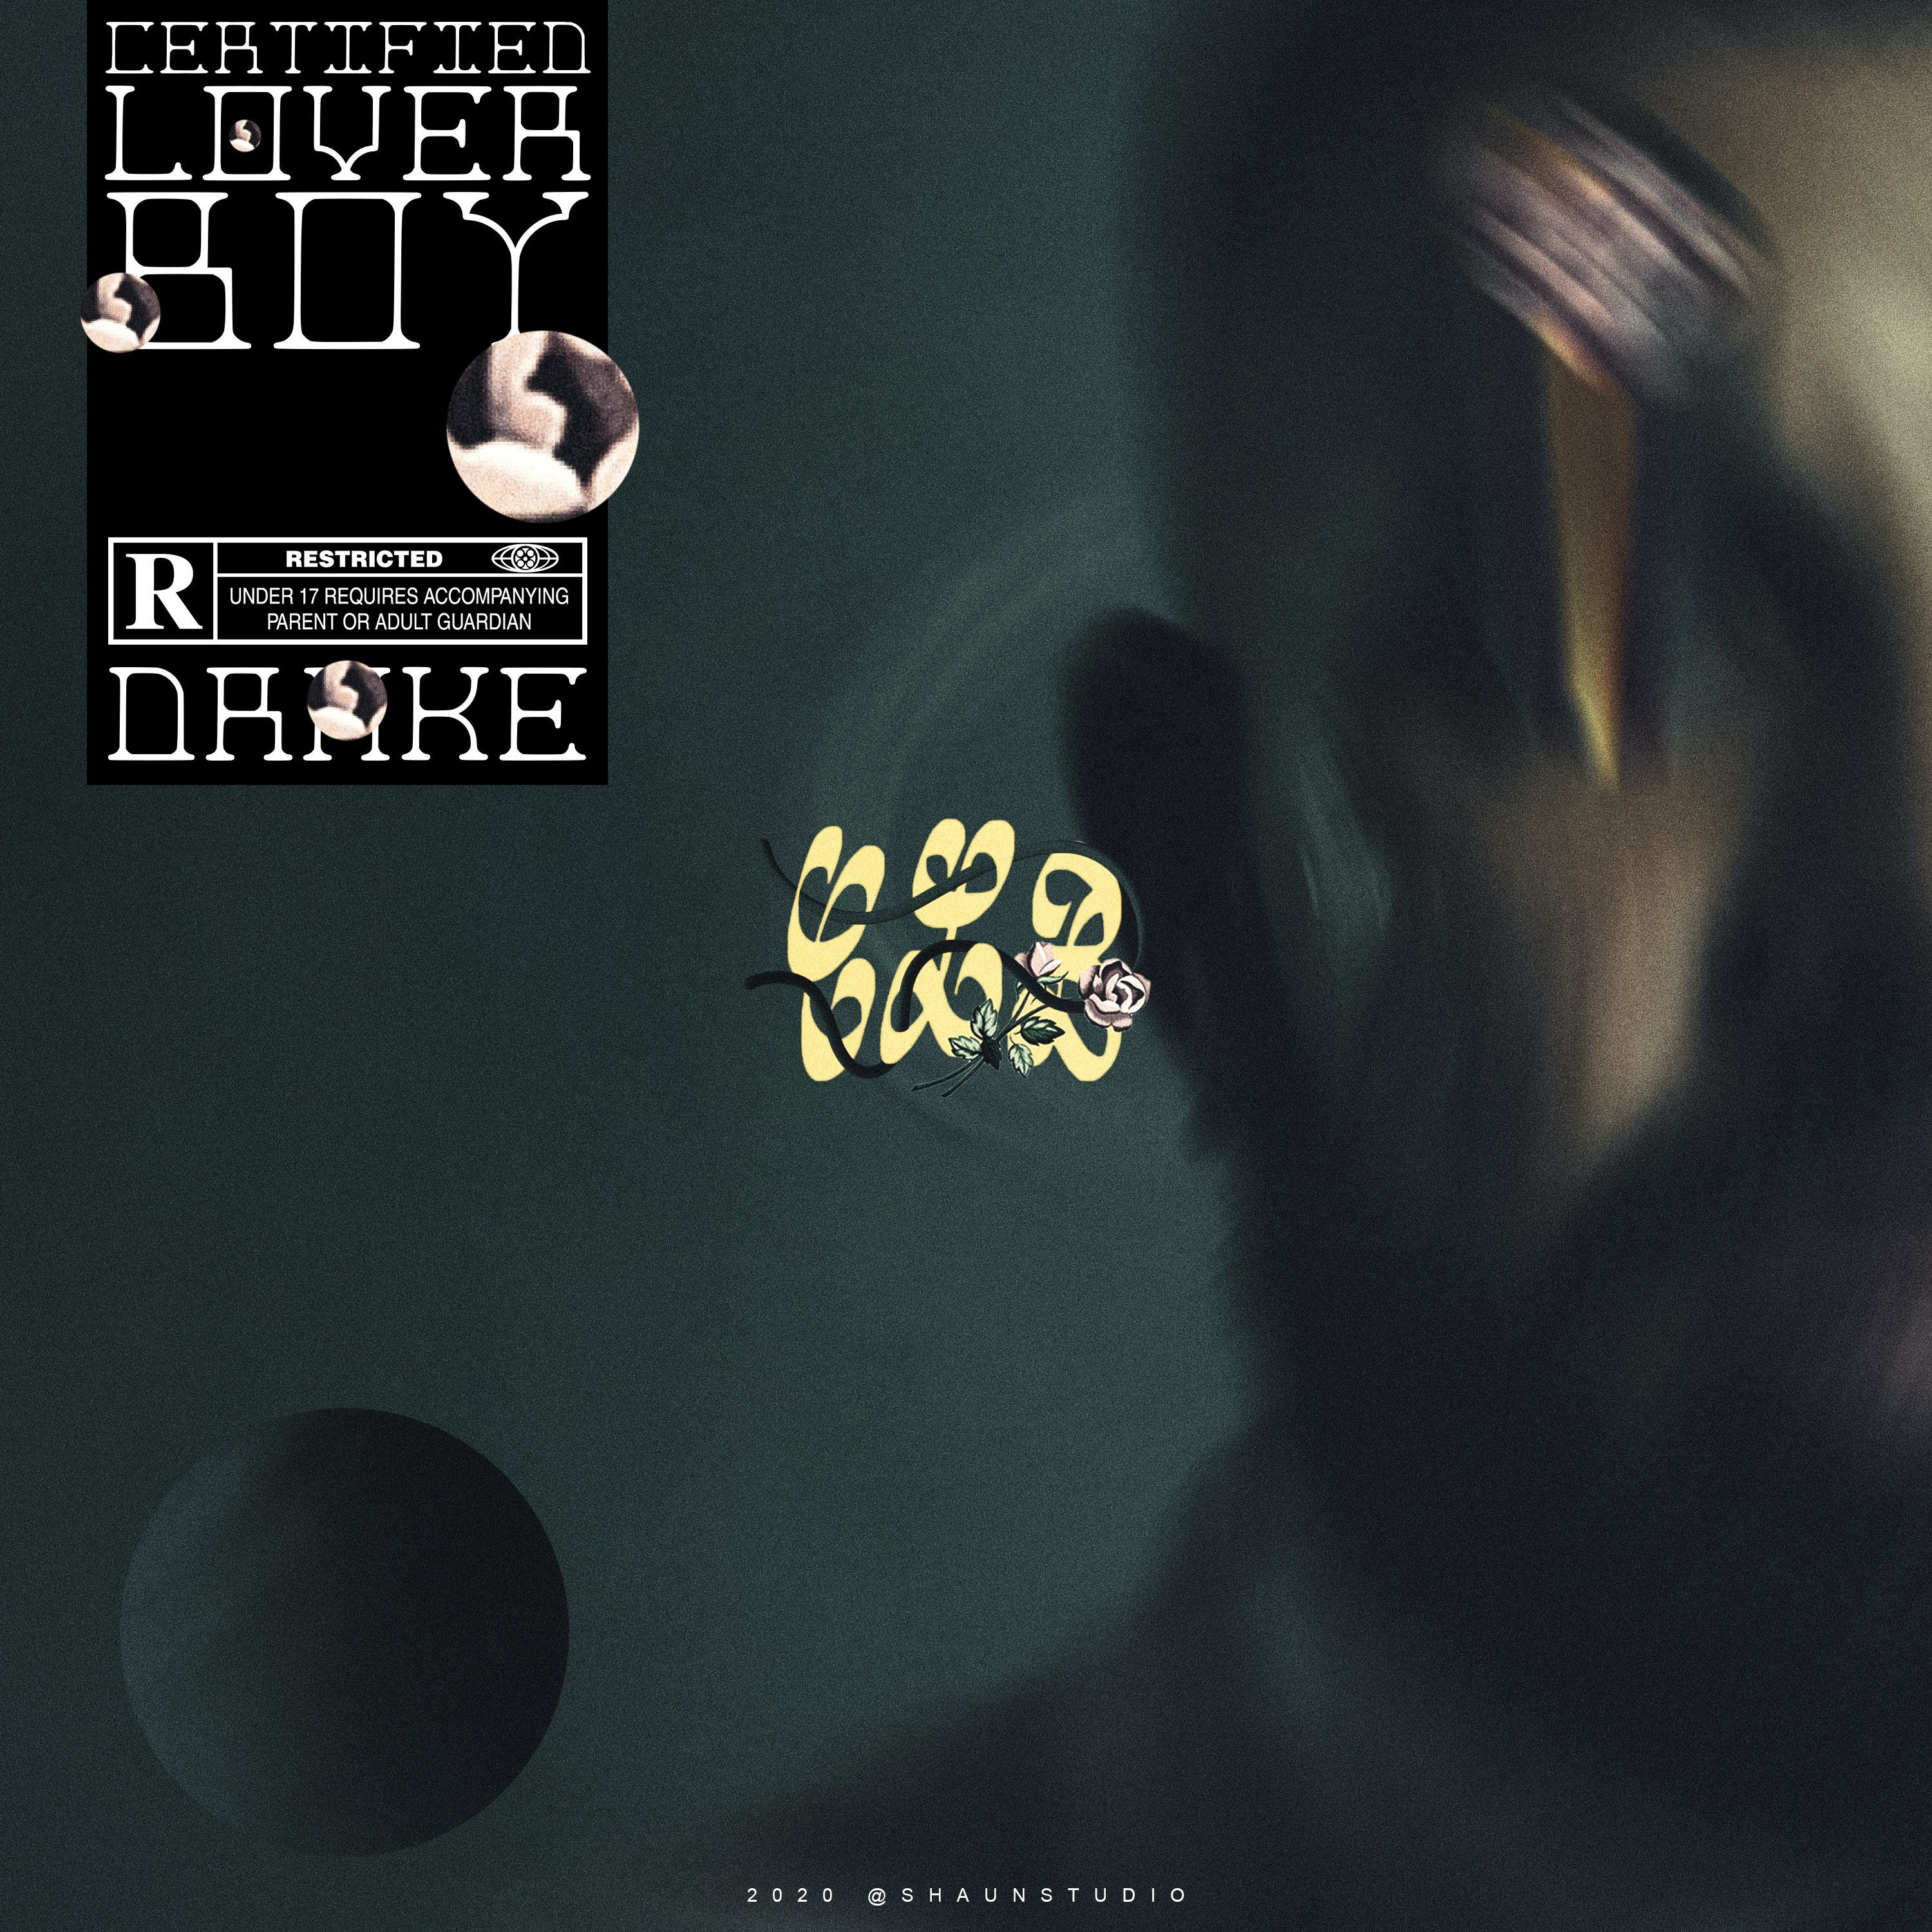 Drake Lover Boy Alternative Cover Art. Cover art, Drakes album, Music covers